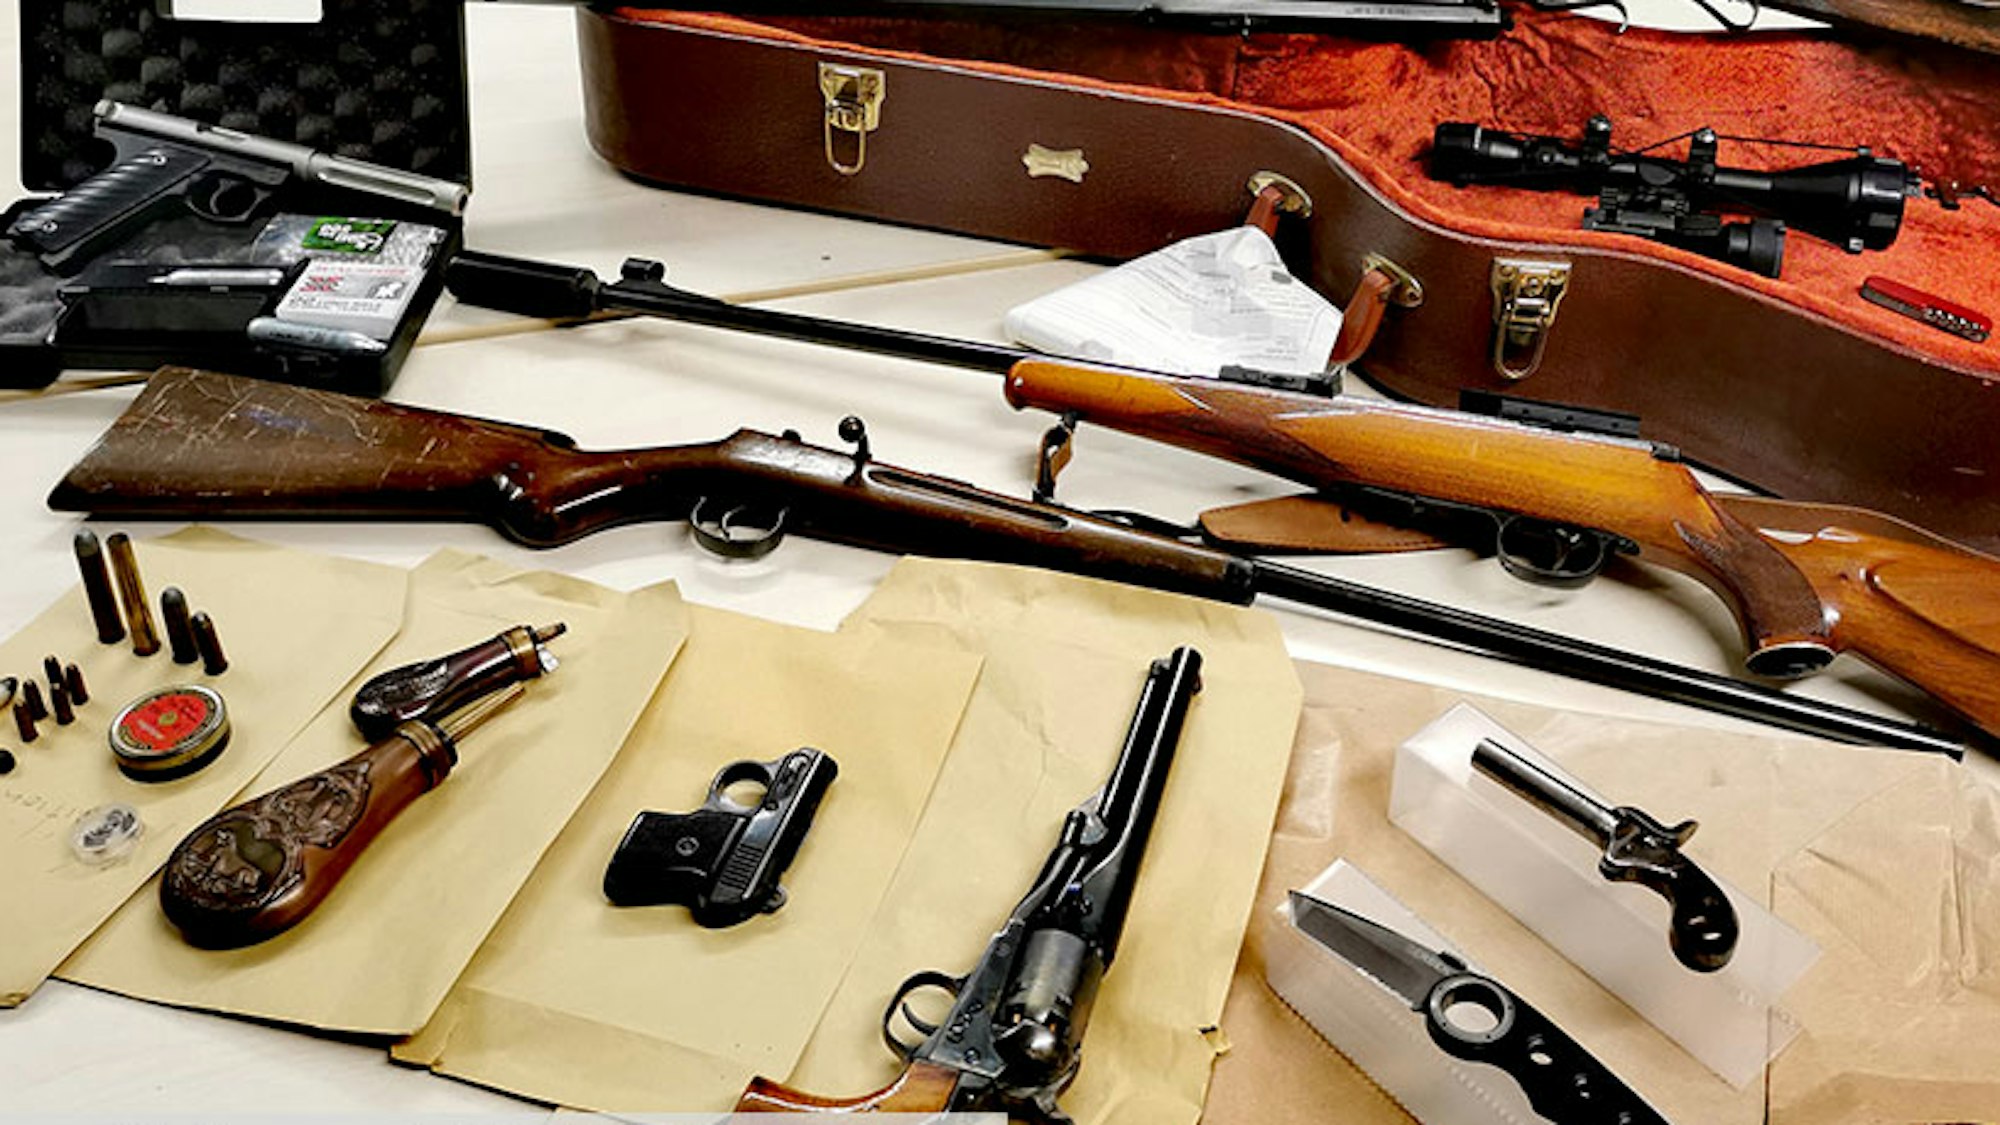 Auf einem Tisch liegen sichergestellte Gewehre, Pistolen, Messer und Munition.